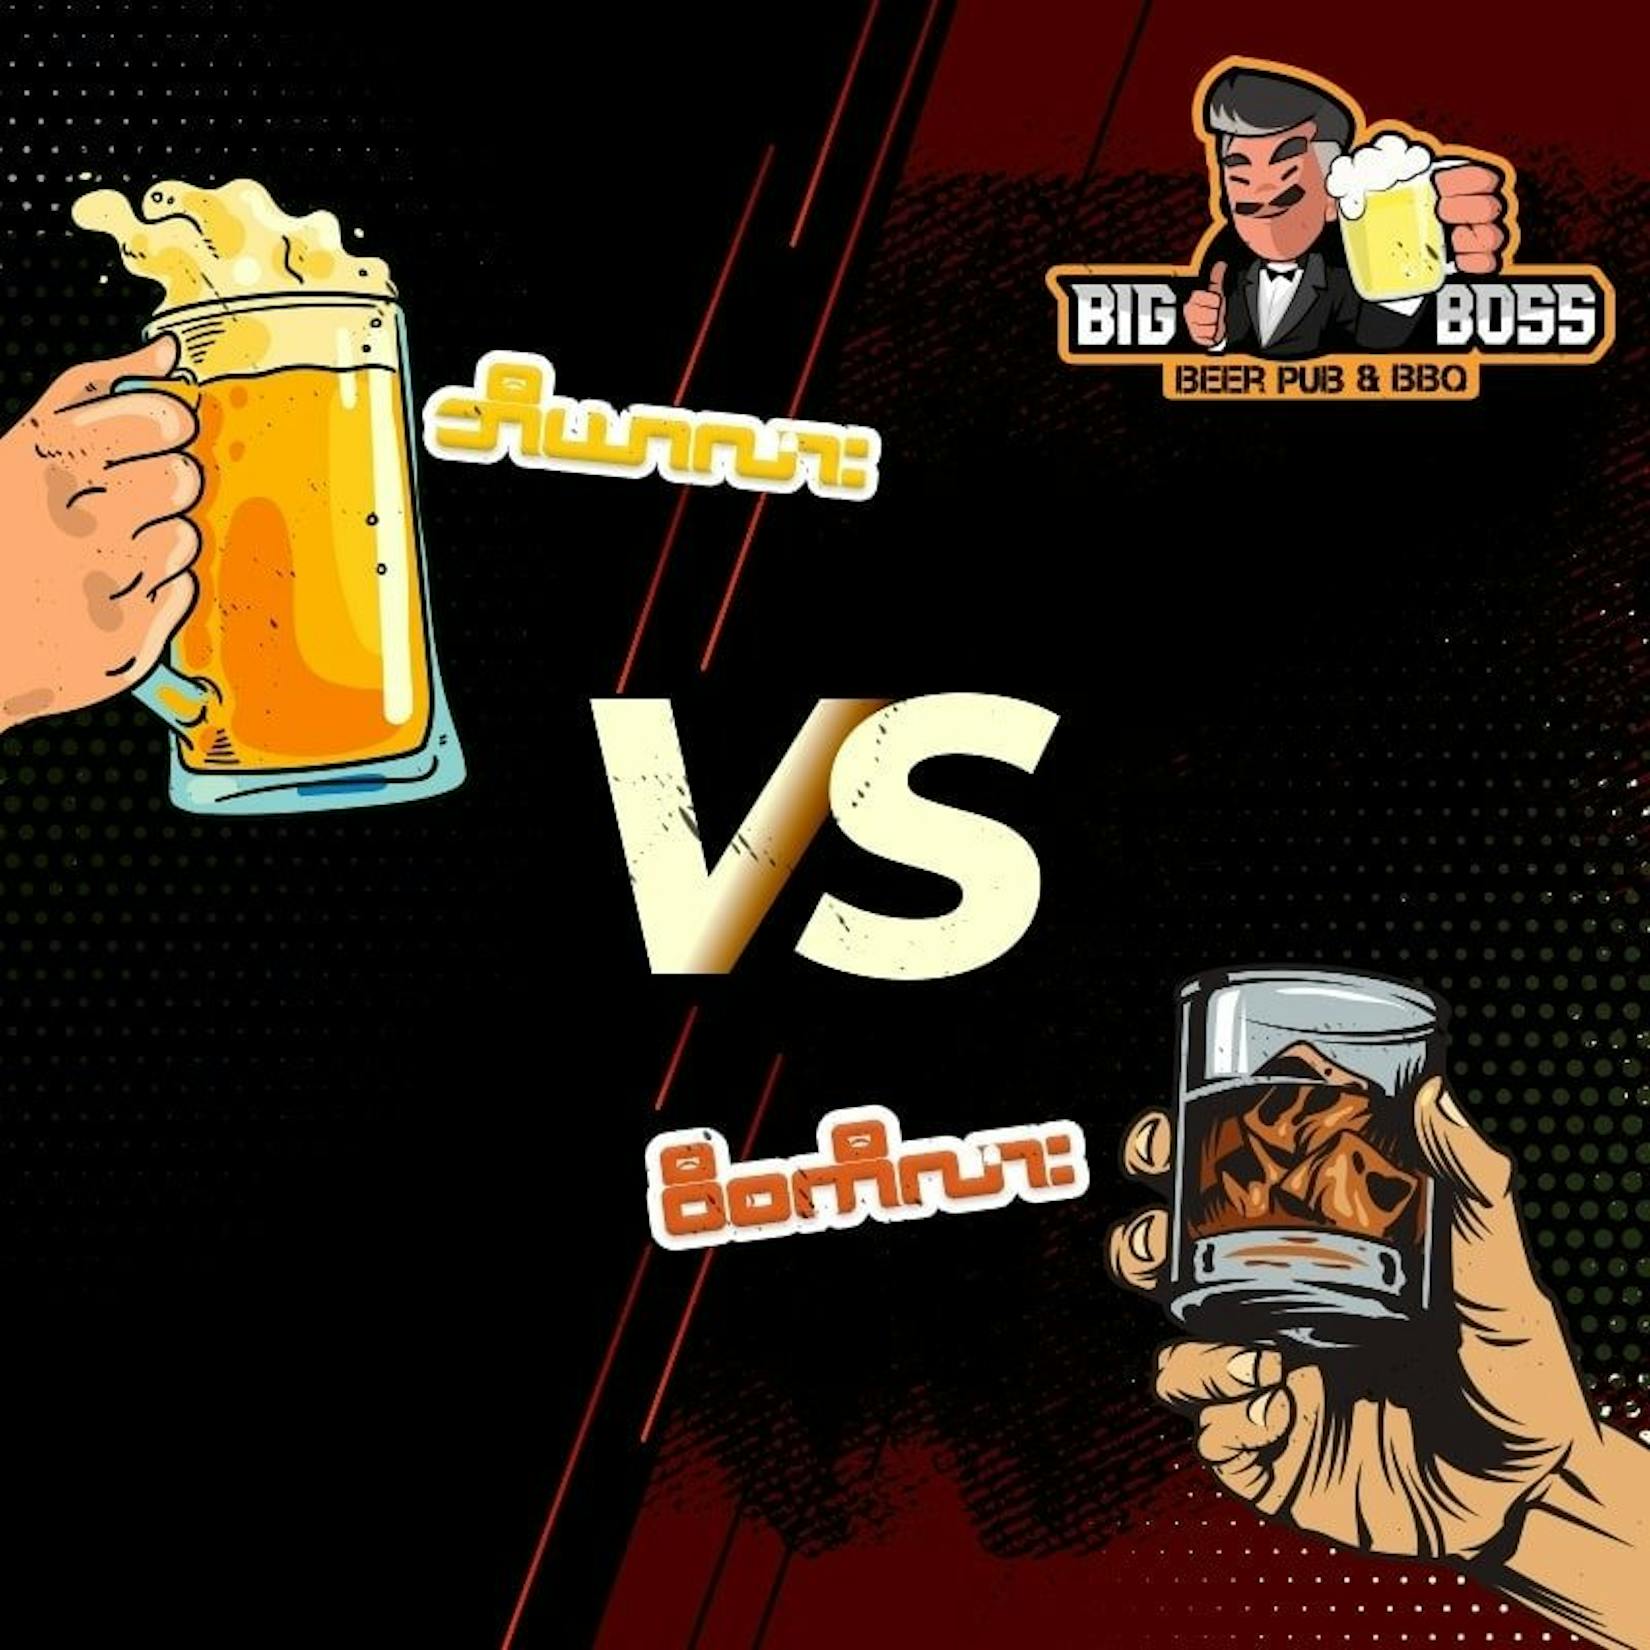 Big Boss Beer Pub & BBQ | yathar